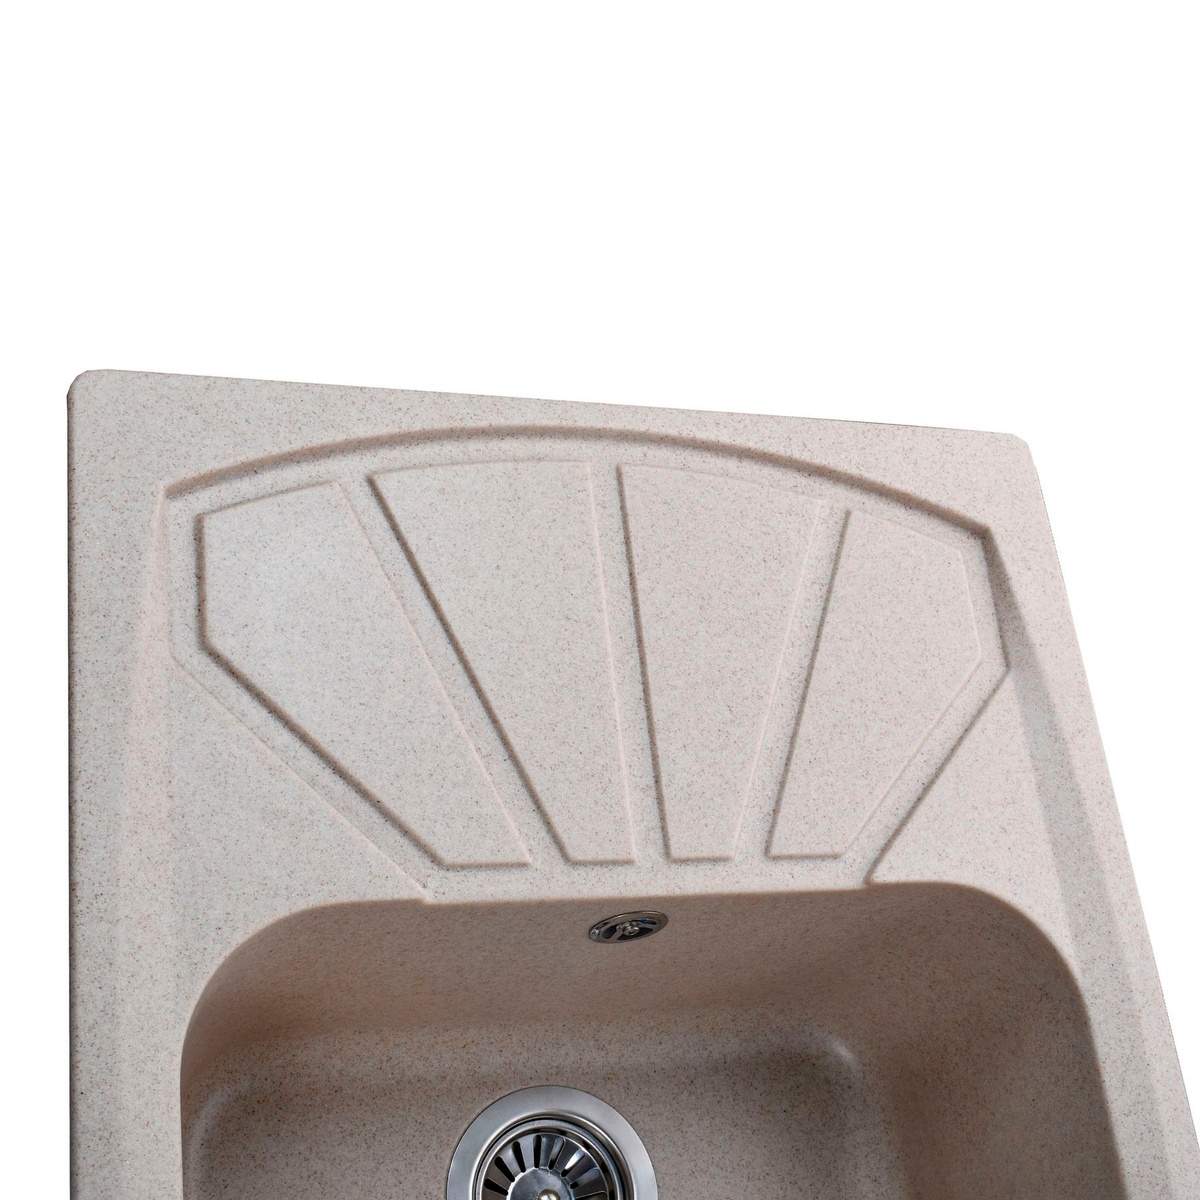 Кухонна мийка композитна прямокутна GLOBUS LUX TANA 500мм x 610мм бежевий без сифону 000005952